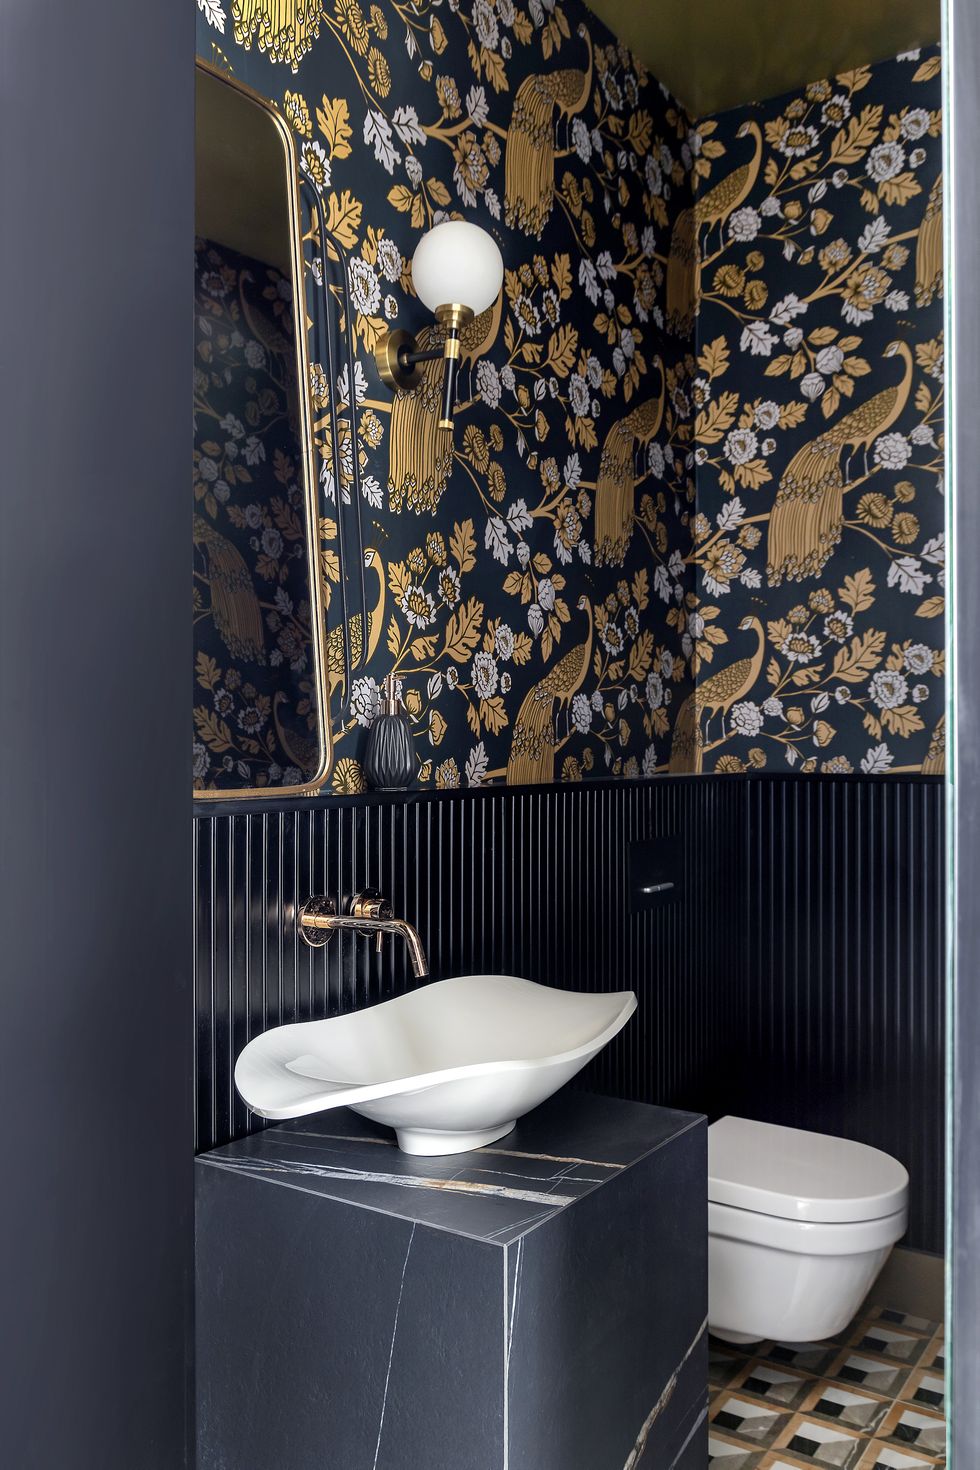 Diseños ideales de Papel Pintado para el cuarto de baño - Latorre Decoración